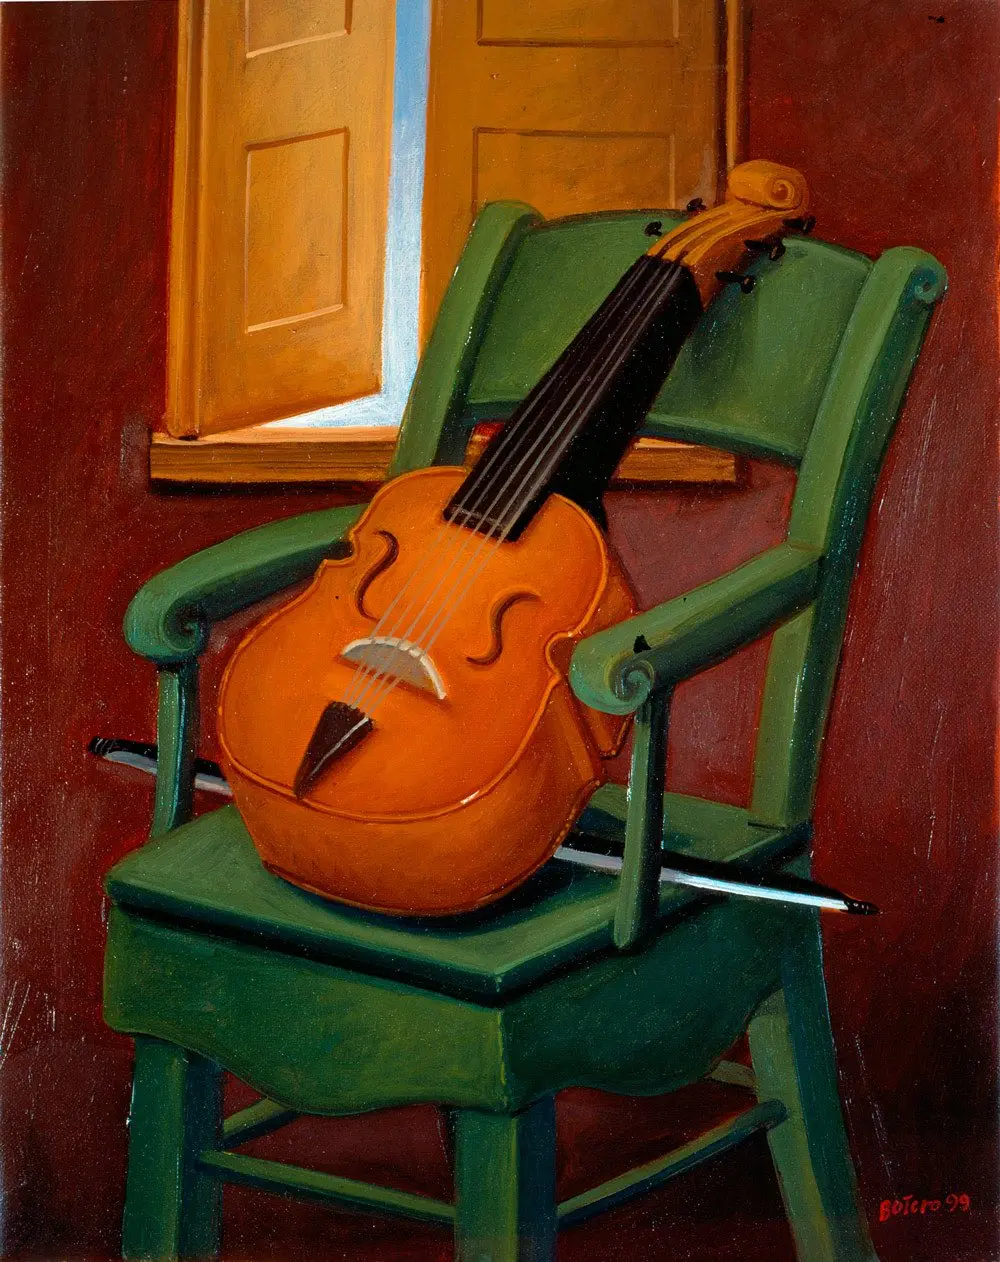 botero guitarra violin - Cómo se llama el estilo artístico de Fernando Botero